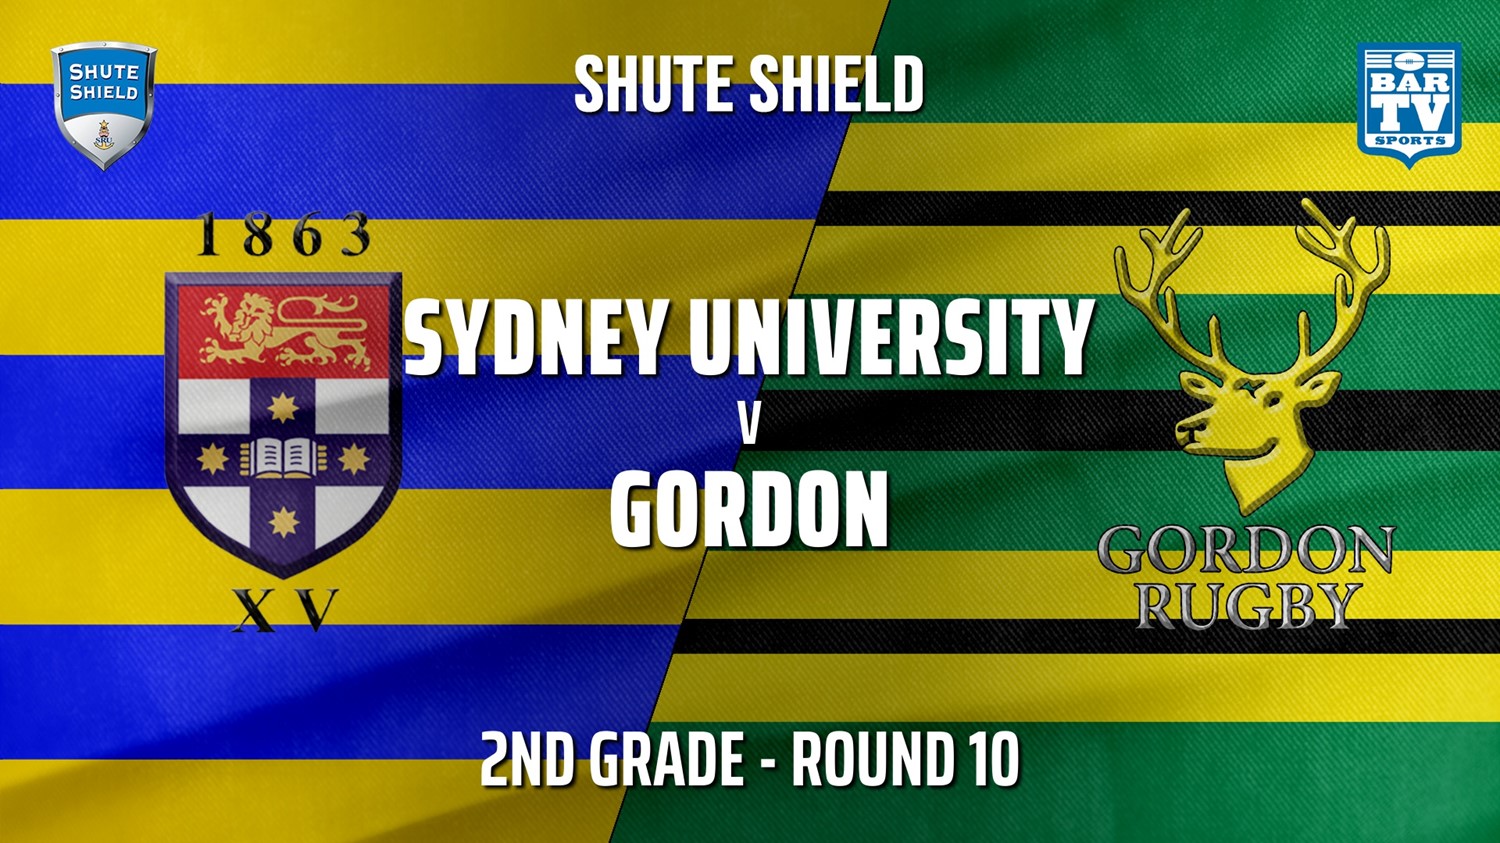 210619-Shute Shield Round 10 - 2nd Grade - Sydney University v Gordon Slate Image